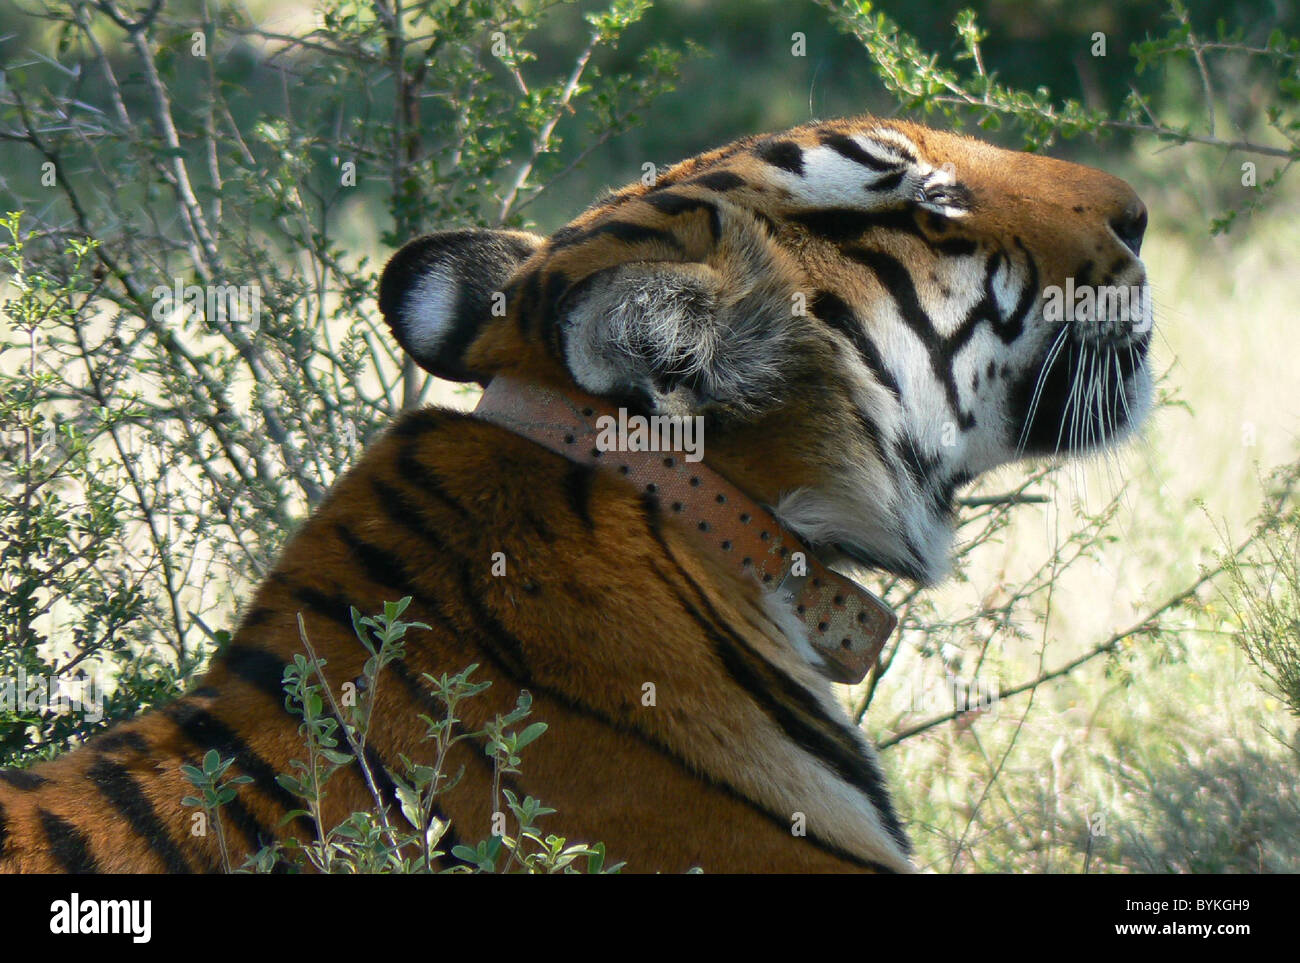 Tiger 327's romantico la missione in Africa a Sud Cina tiger, uno di meno di 100 in esistenza, ha preso il via da una Shanghai Foto Stock